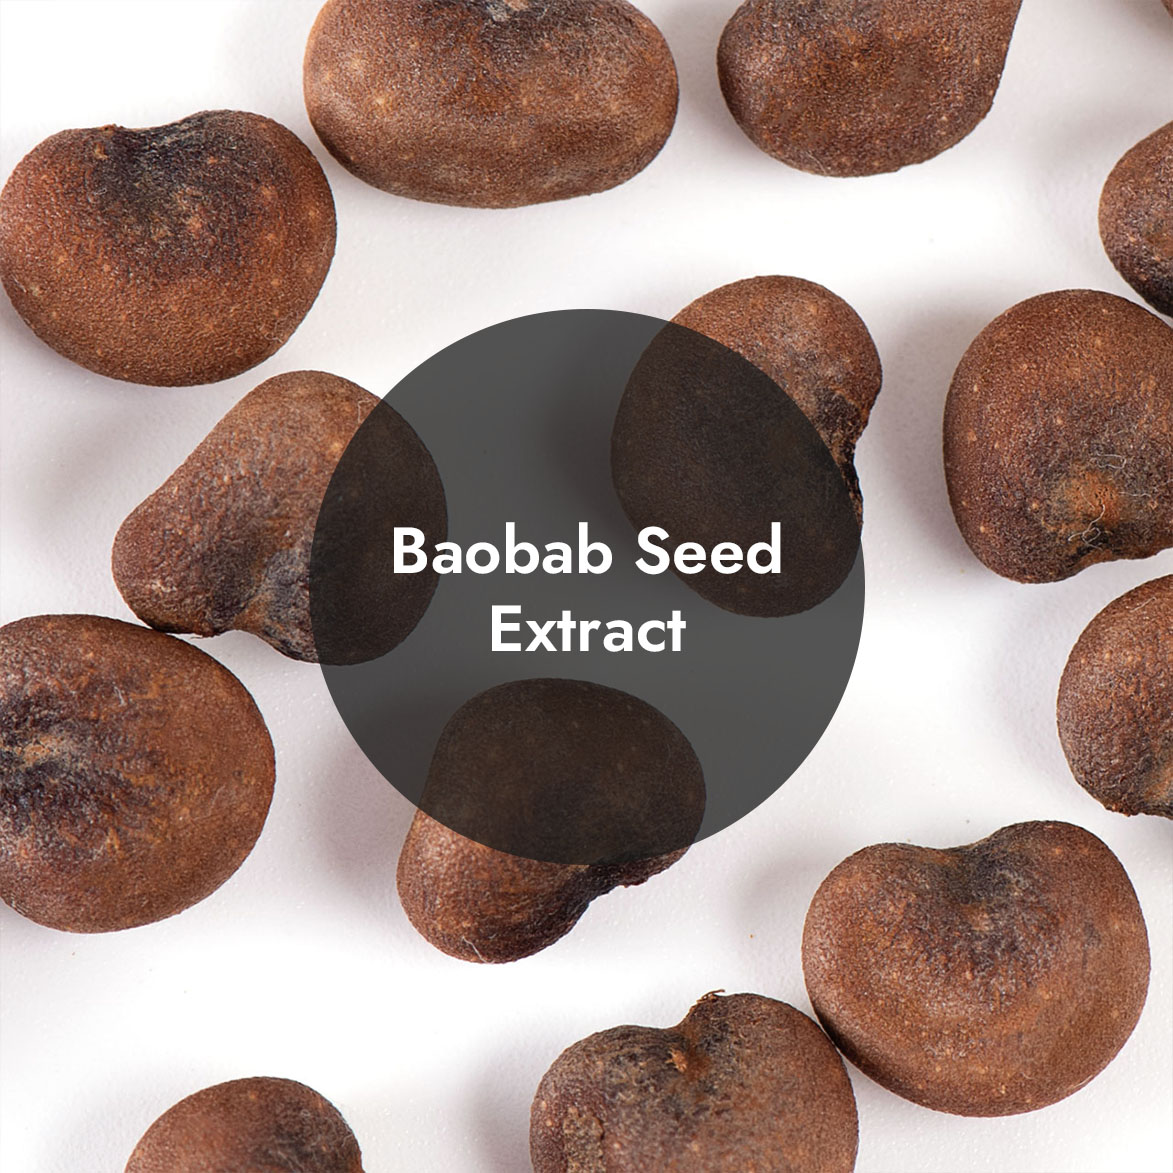 Baobab Seed Extract